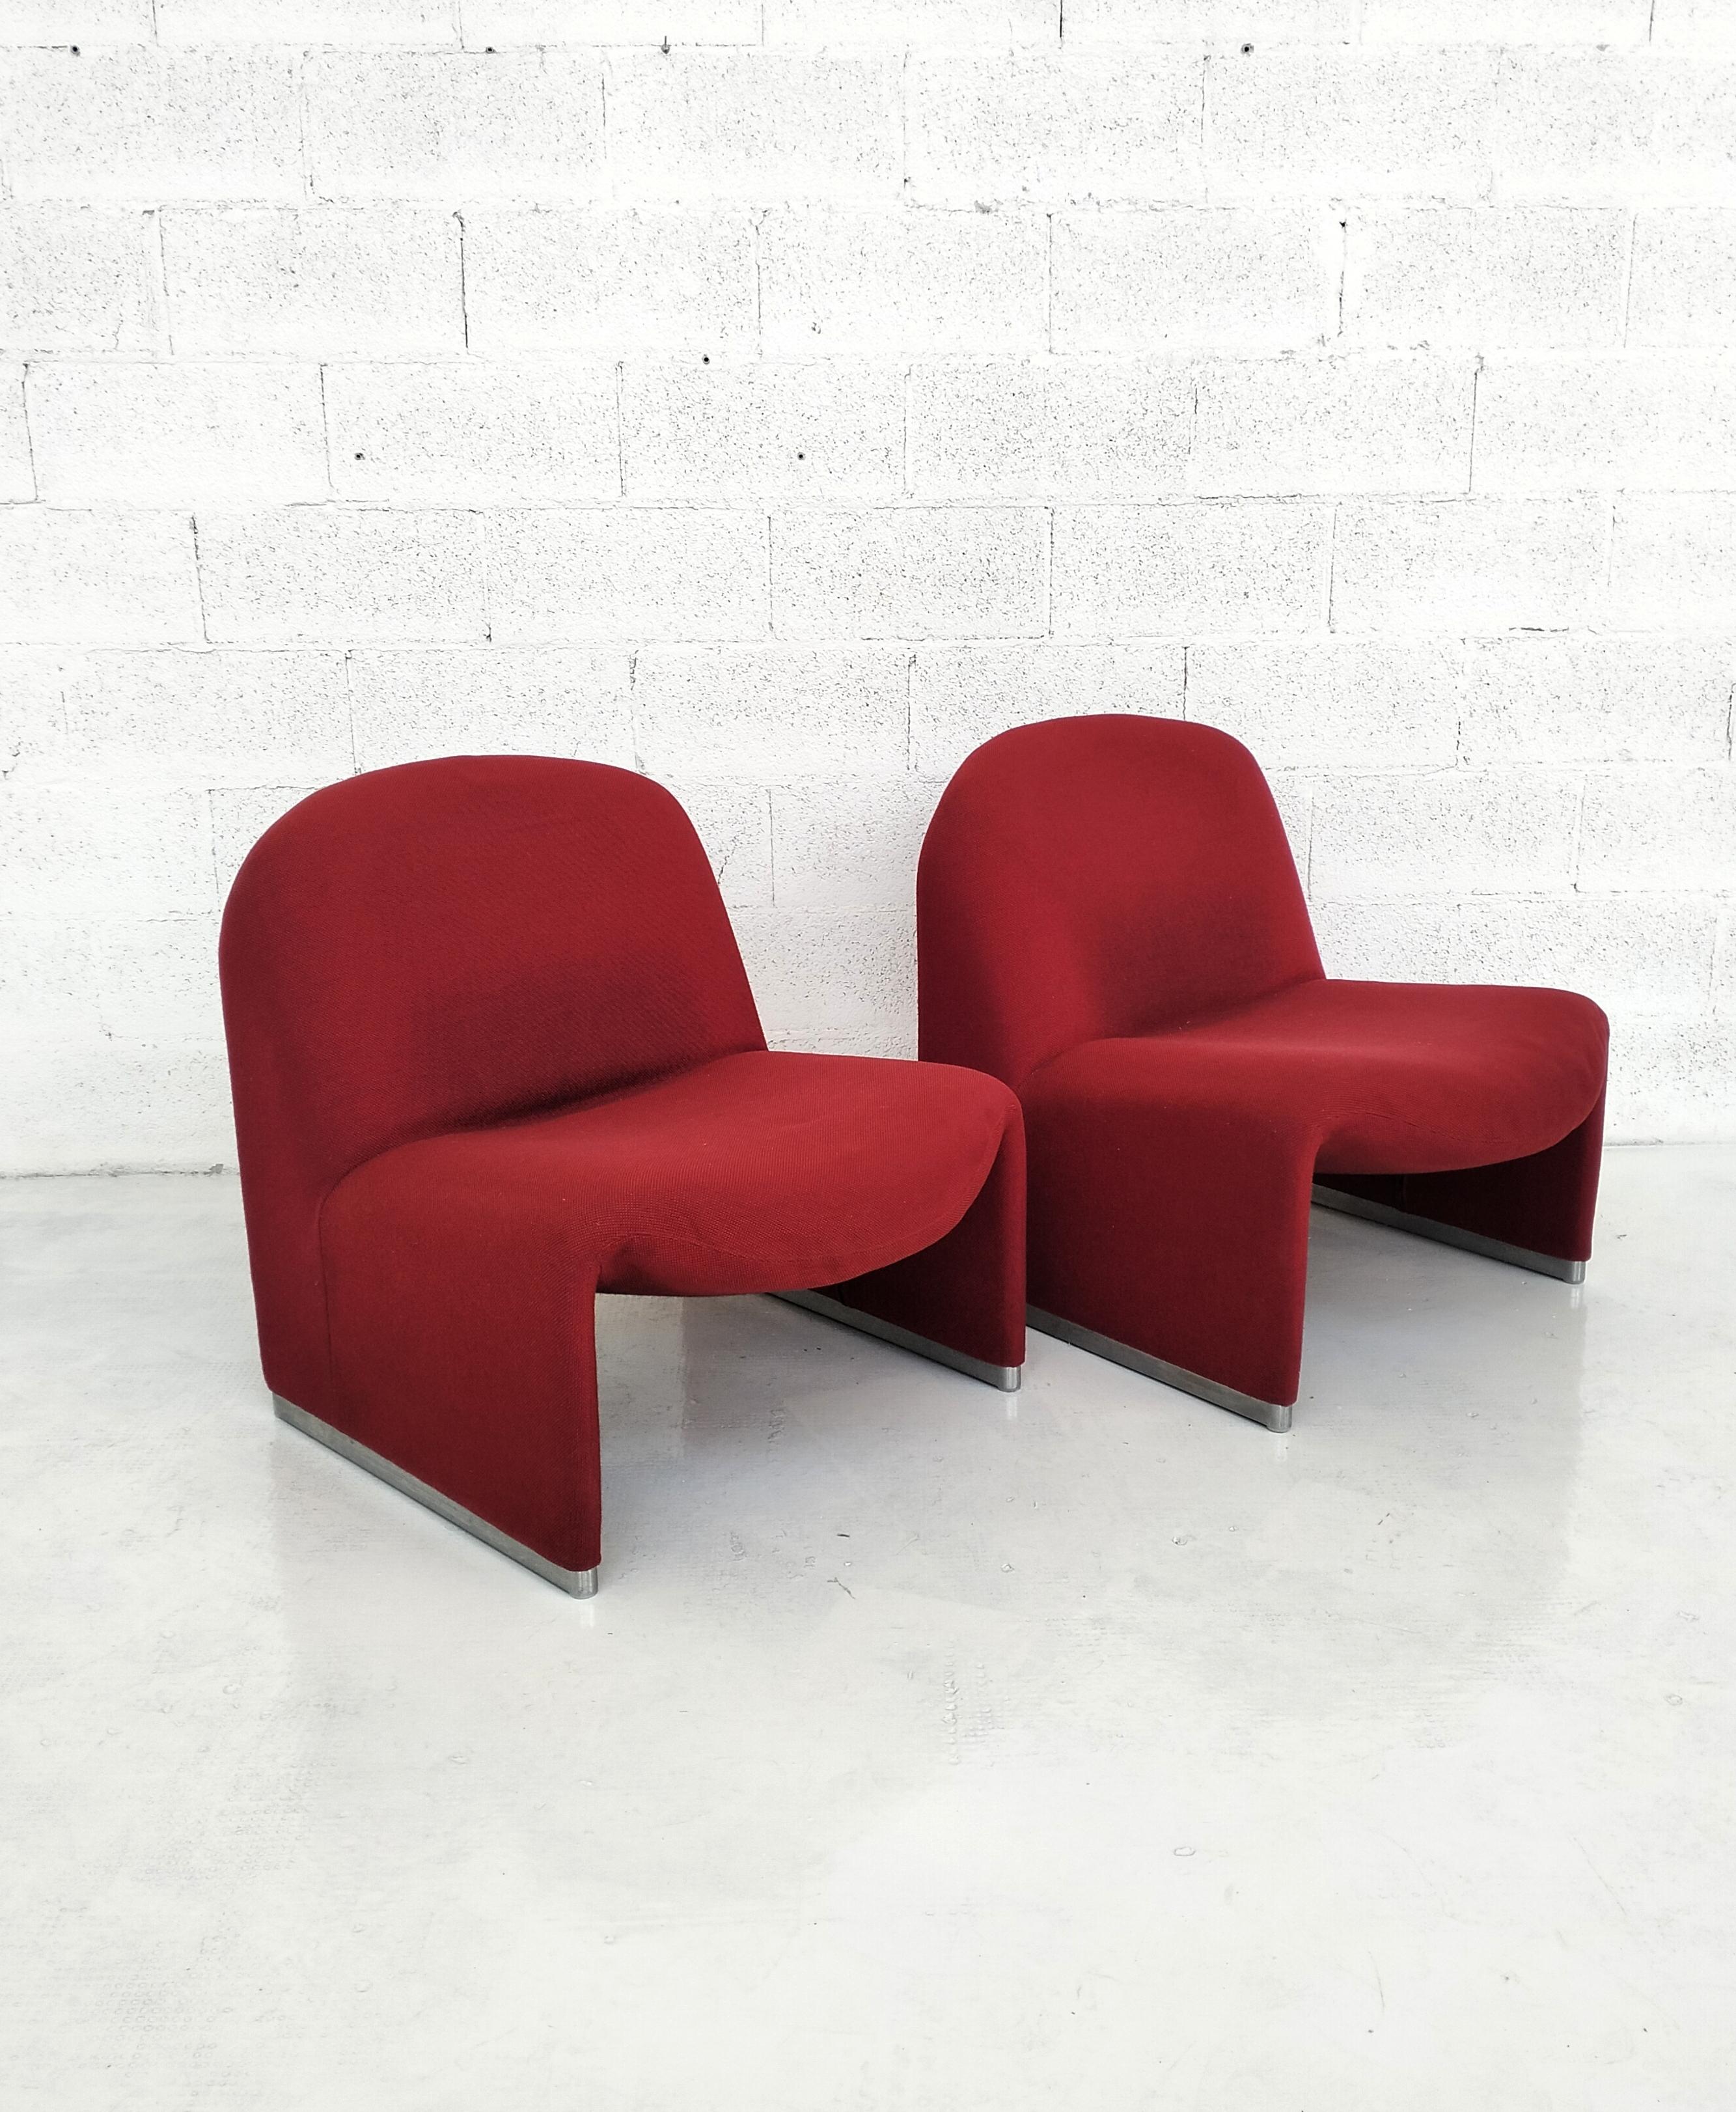 Fin du 20e siècle 2 chaises Alky rouges de Giancarlo Piretti a pour Anonima Castelli années 70